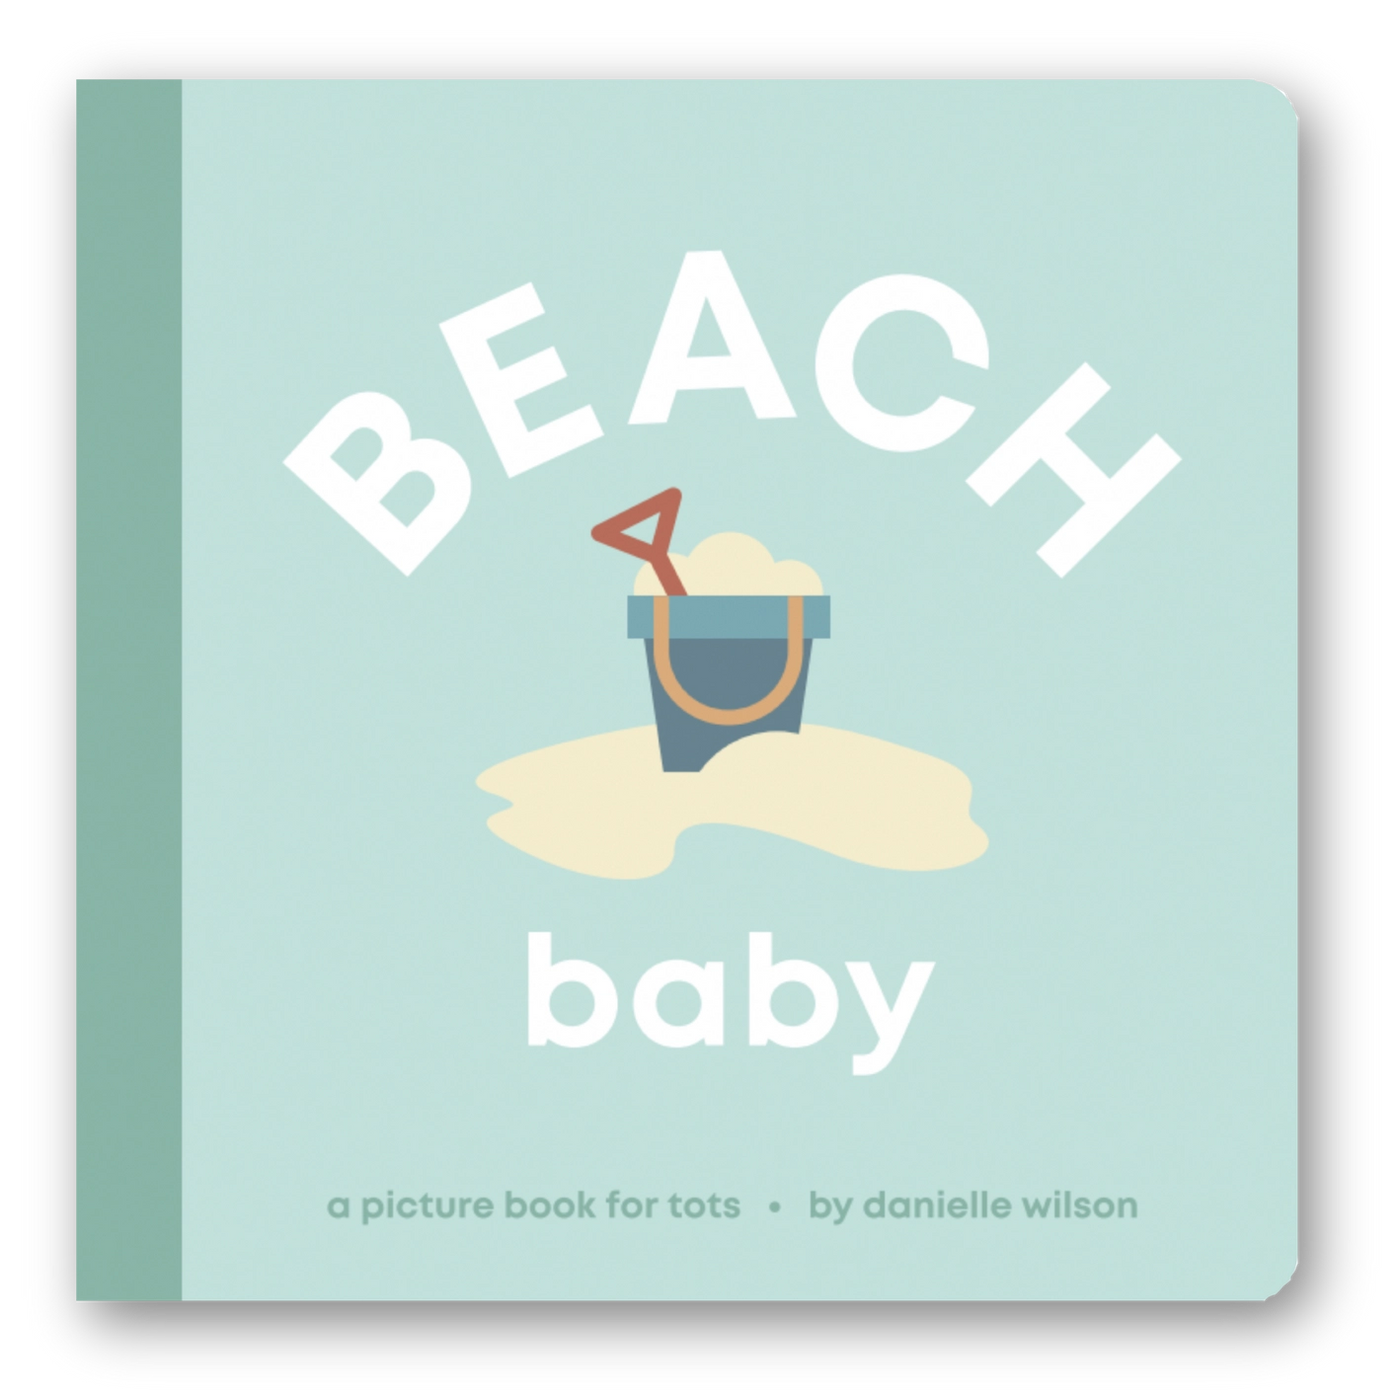 BEACH Baby